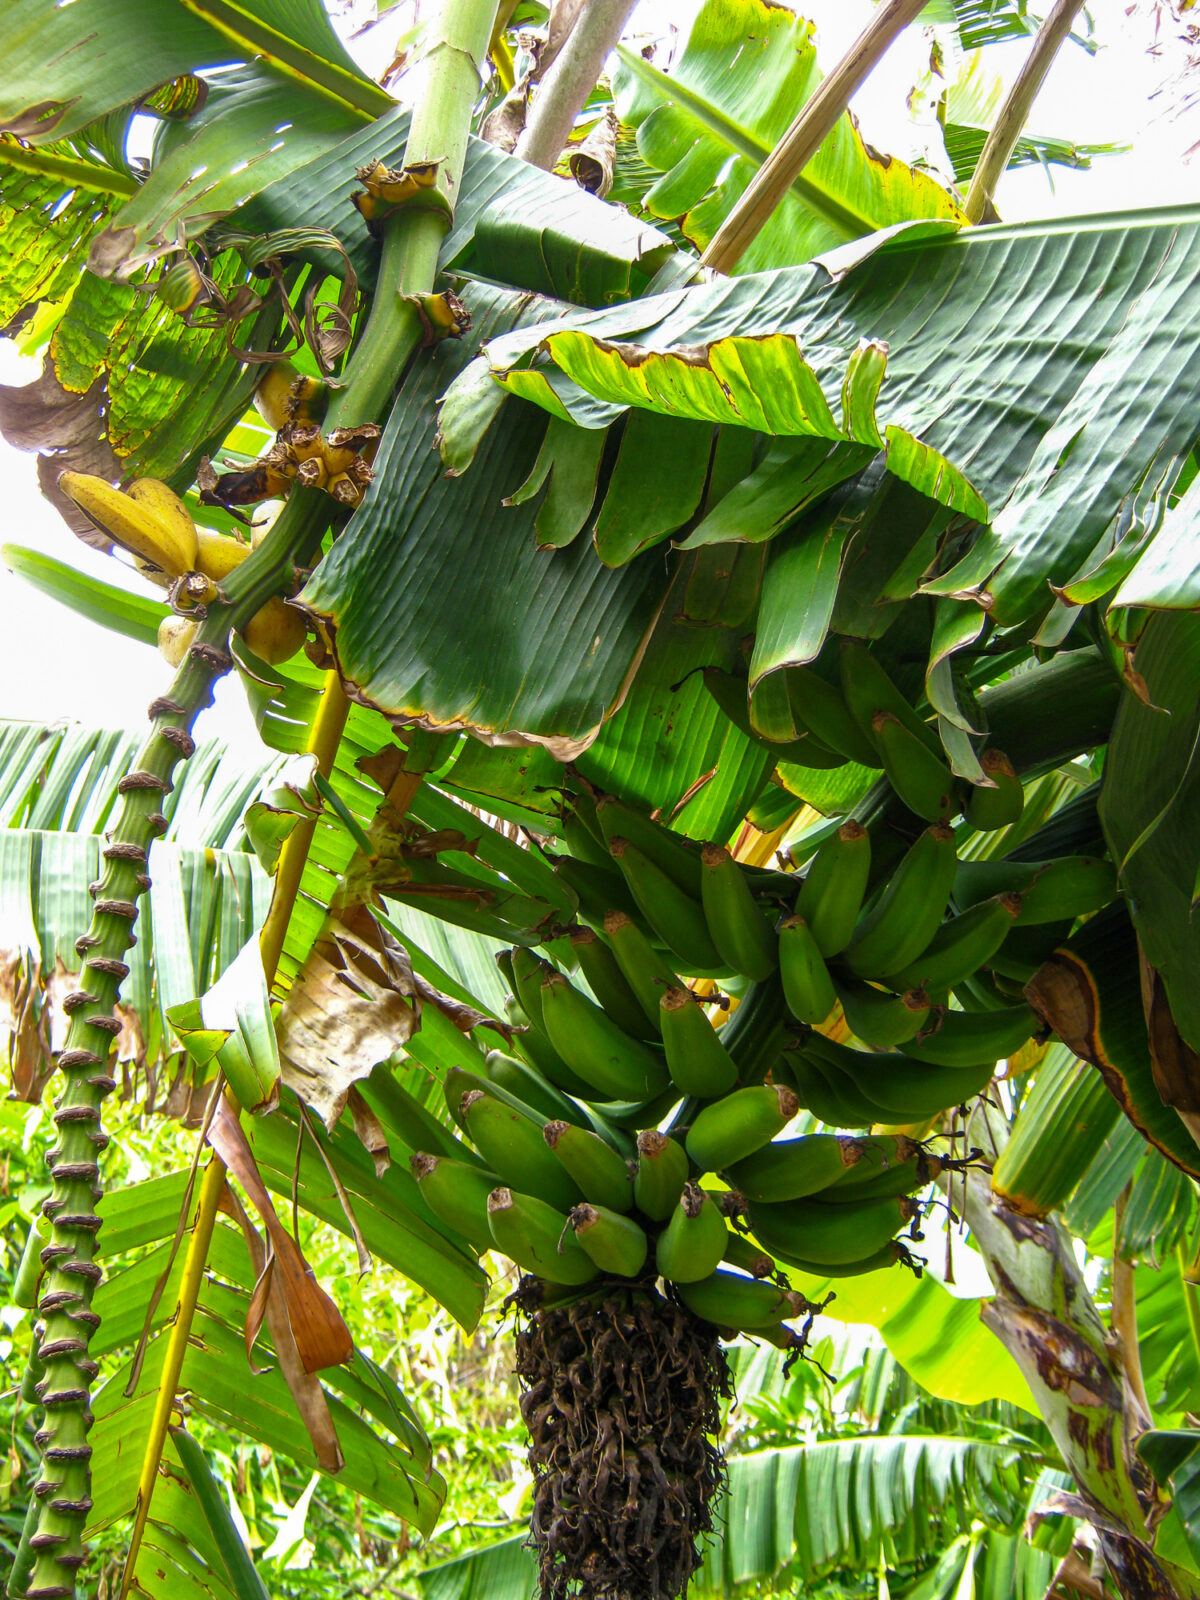 Bananas growing in the San Diego Botanic Garden Subtropical Fruit Garden